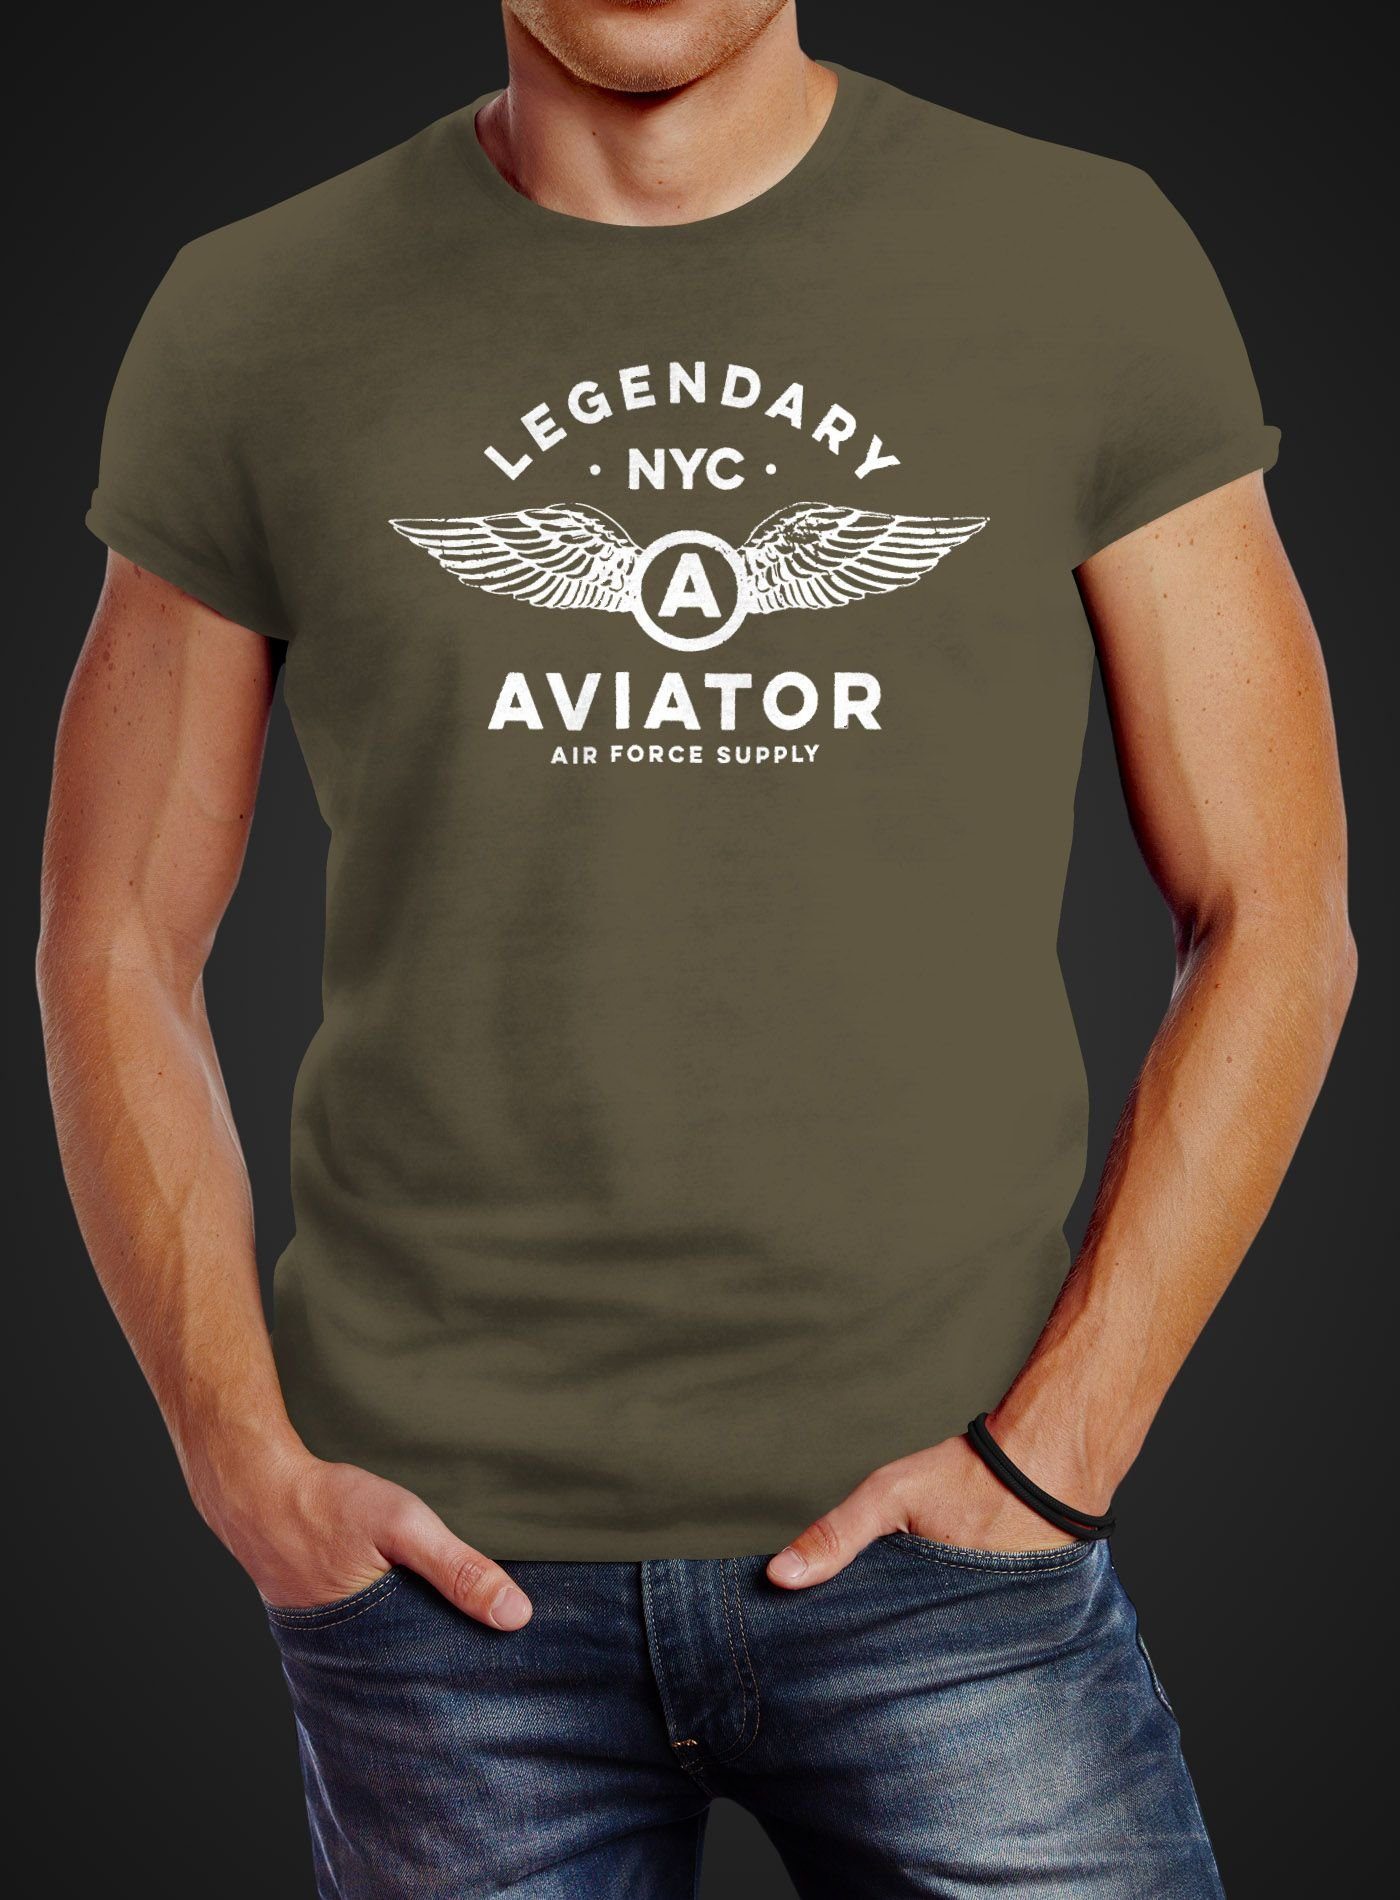 Neverless Print-Shirt Herren NYC Legendary Neverless® Force mit Flügel Aviator Air Streetstyle grün T-Shirt Print Fashion Luftwaffe